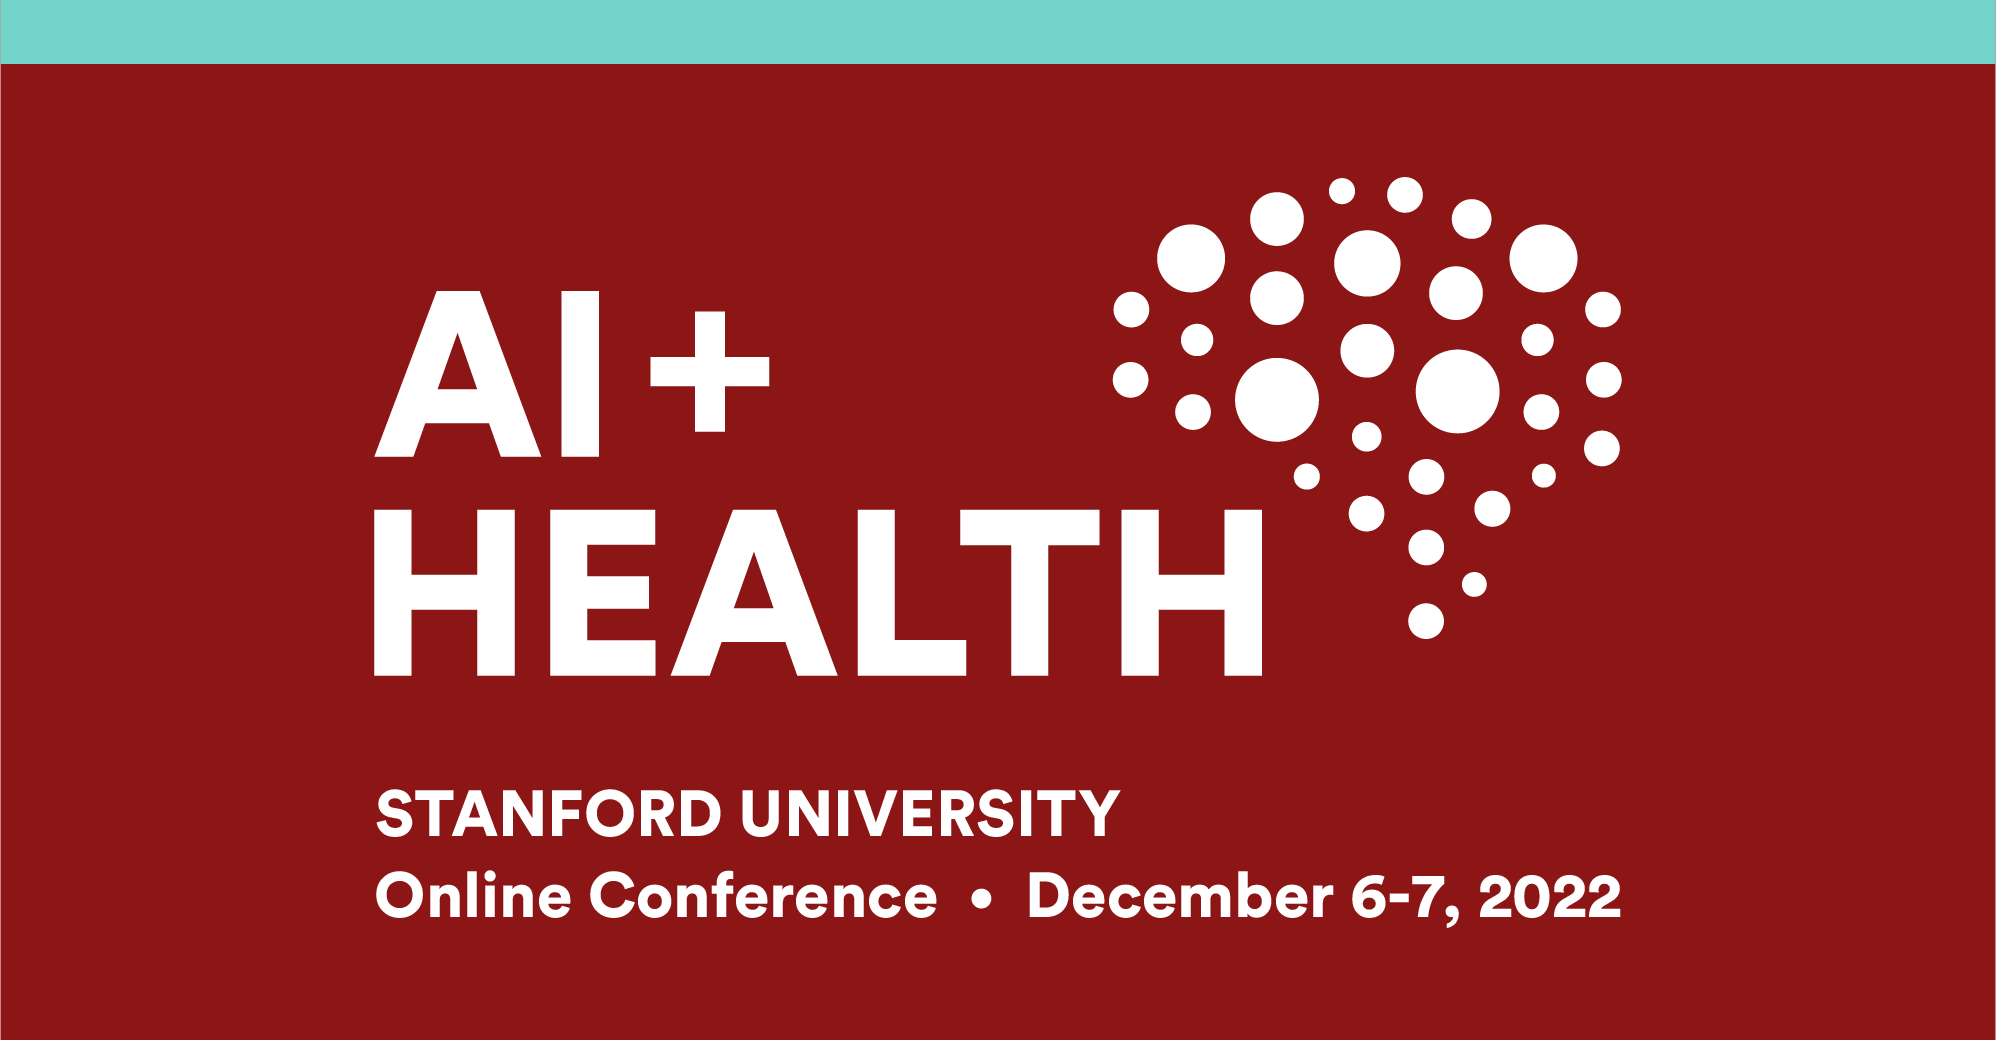 Conferință online AI + Health în perioada 6-7 decembrie 2022.